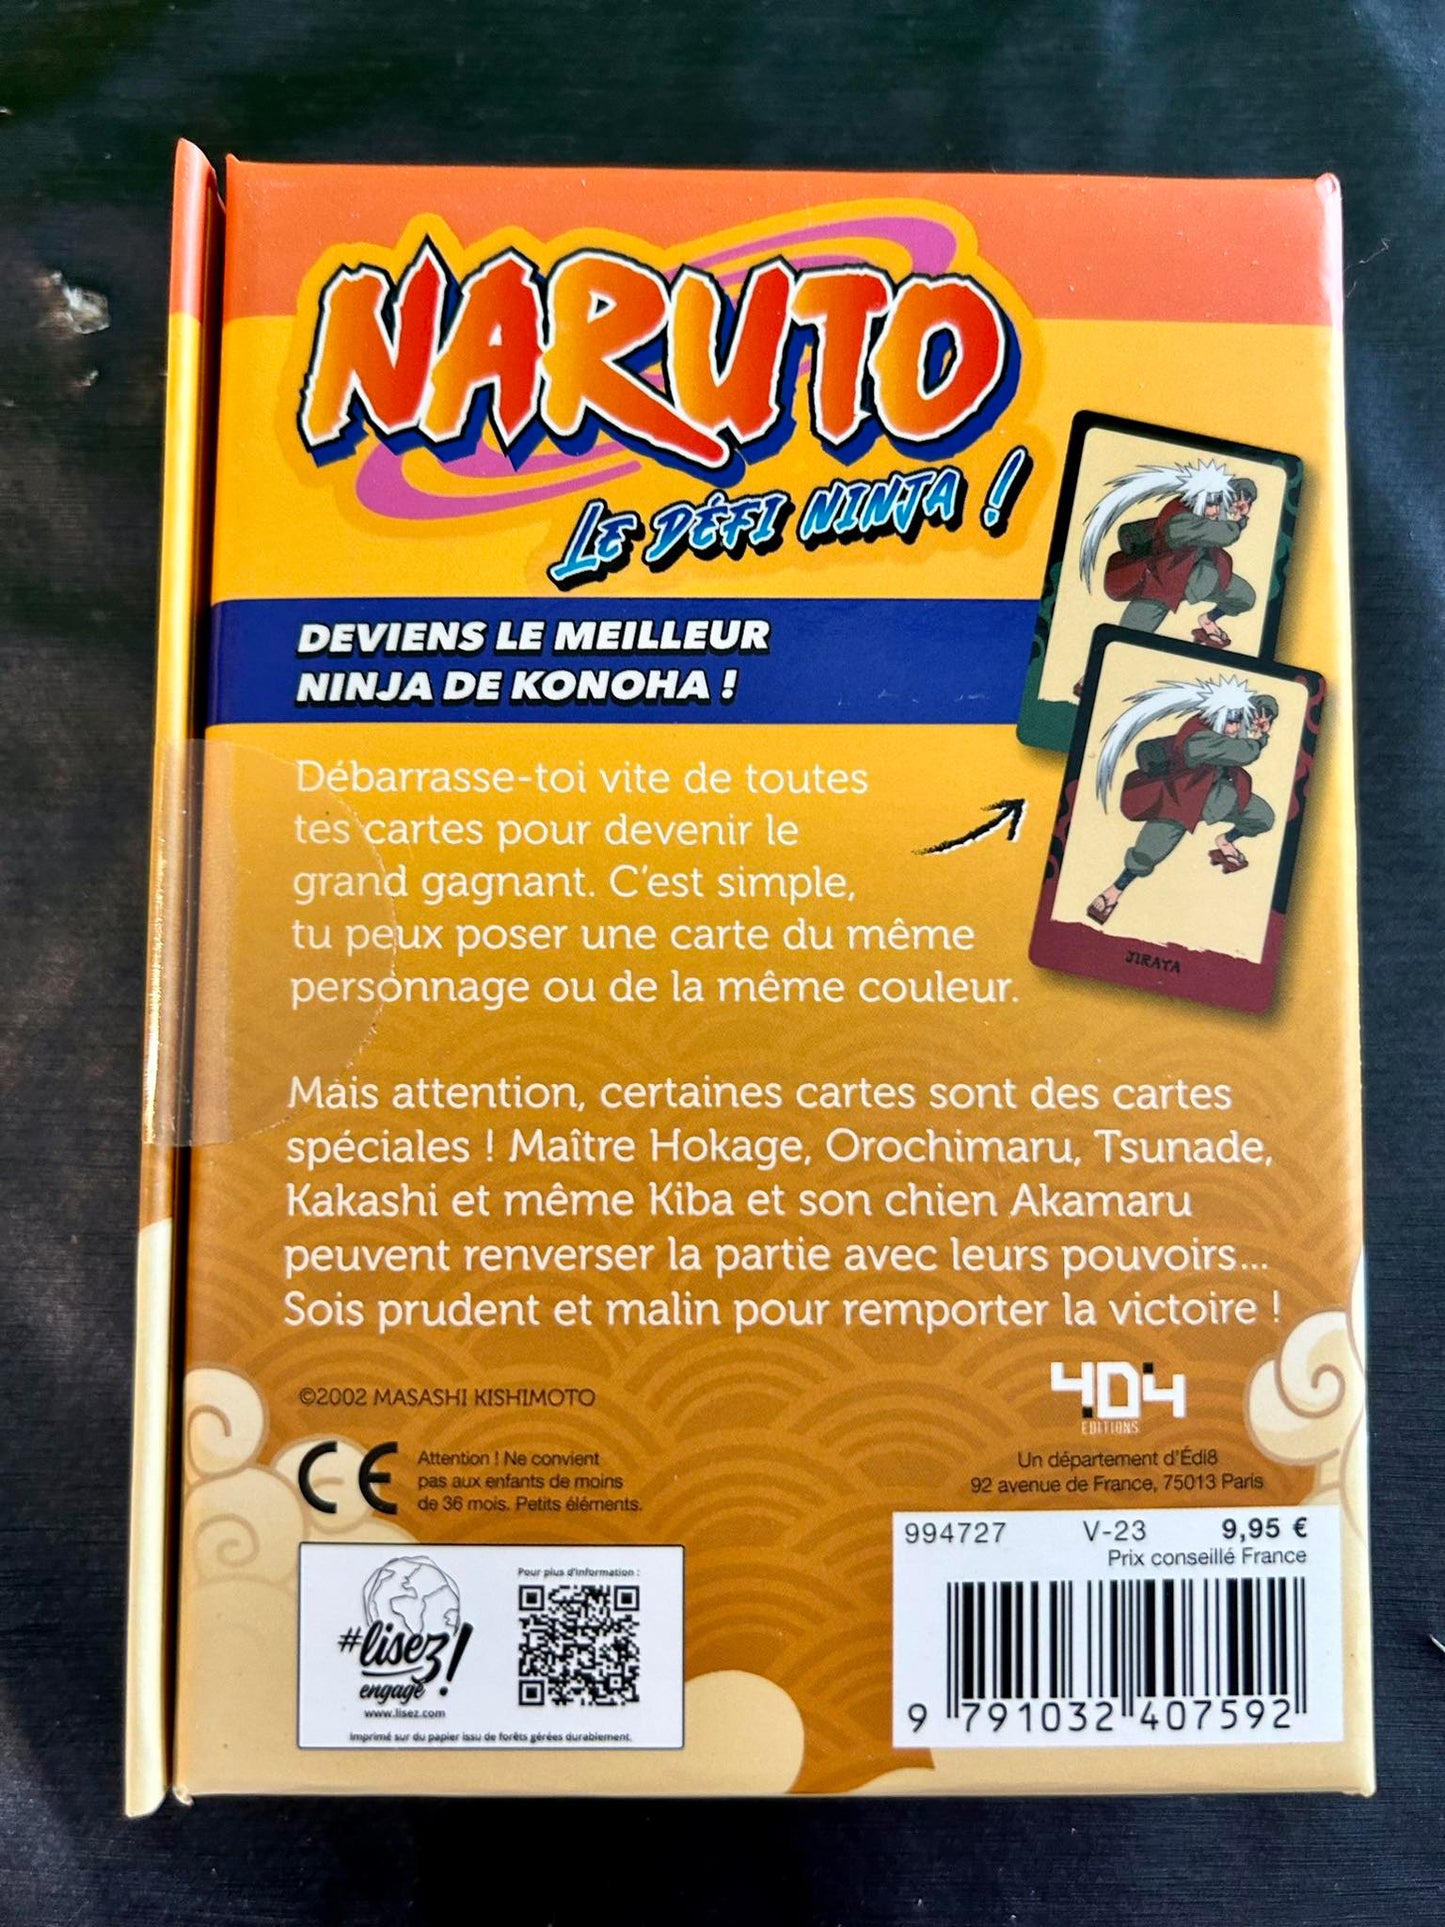 Naruto - My Card Game - The Ninja Challenge!